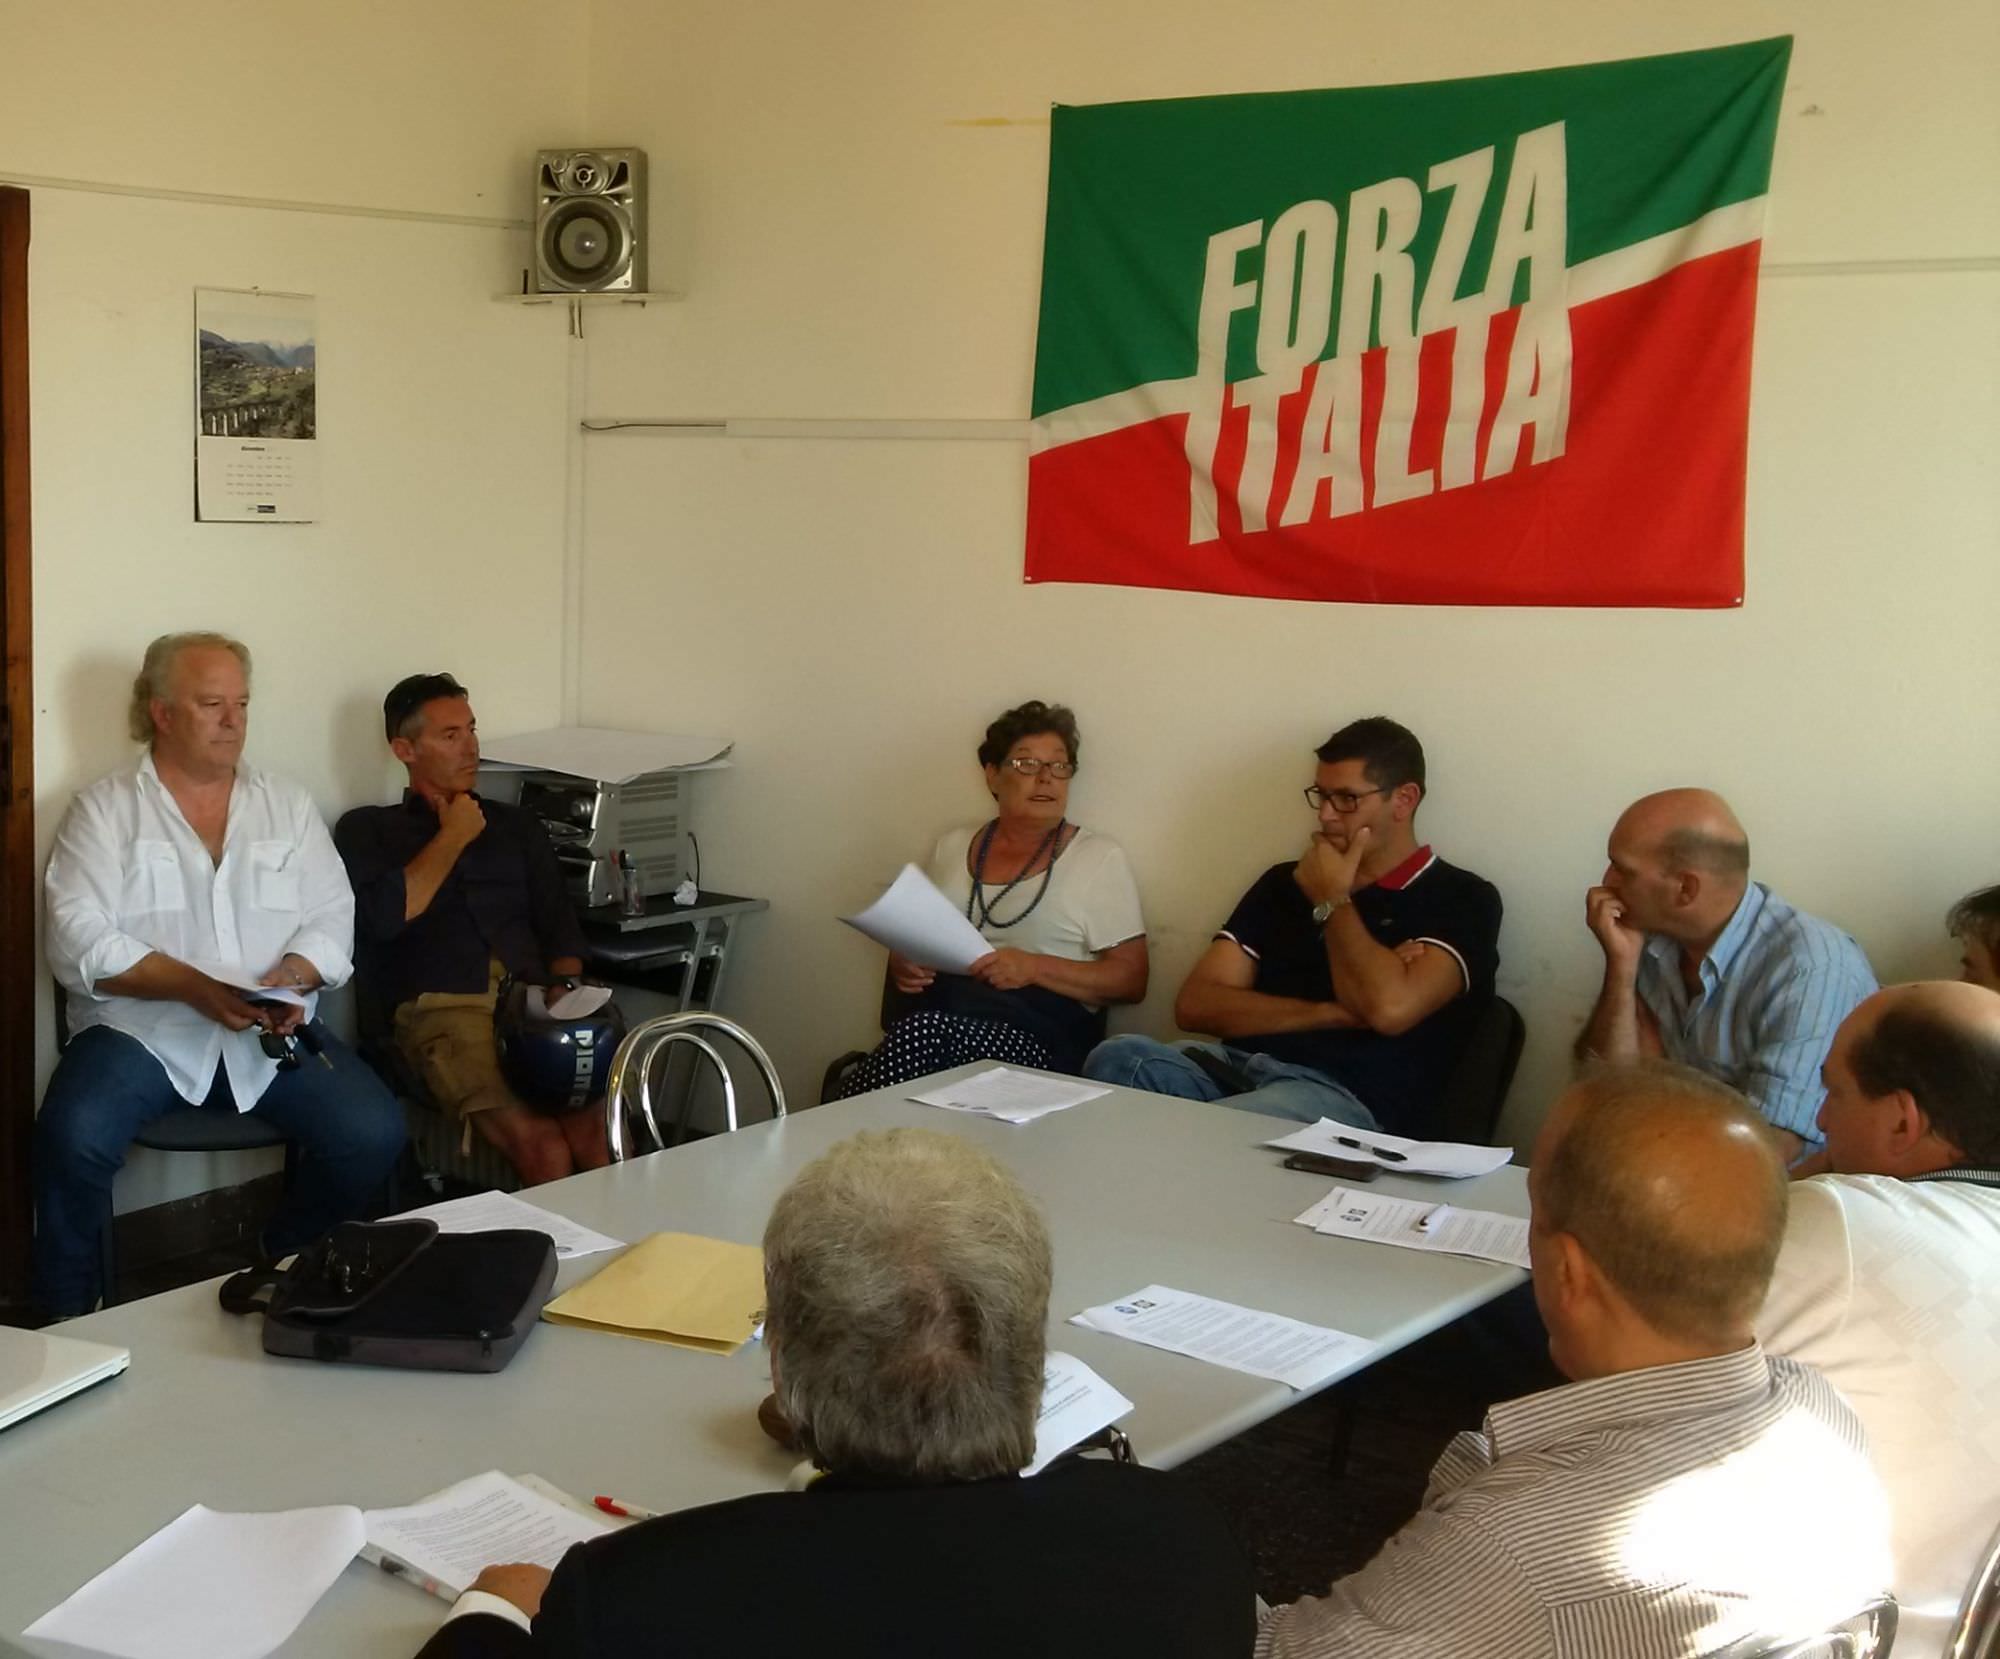 Forza Italia proiettata verso le elezioni 2015 a Pietrasanta, ipotesi primarie per la coalizione